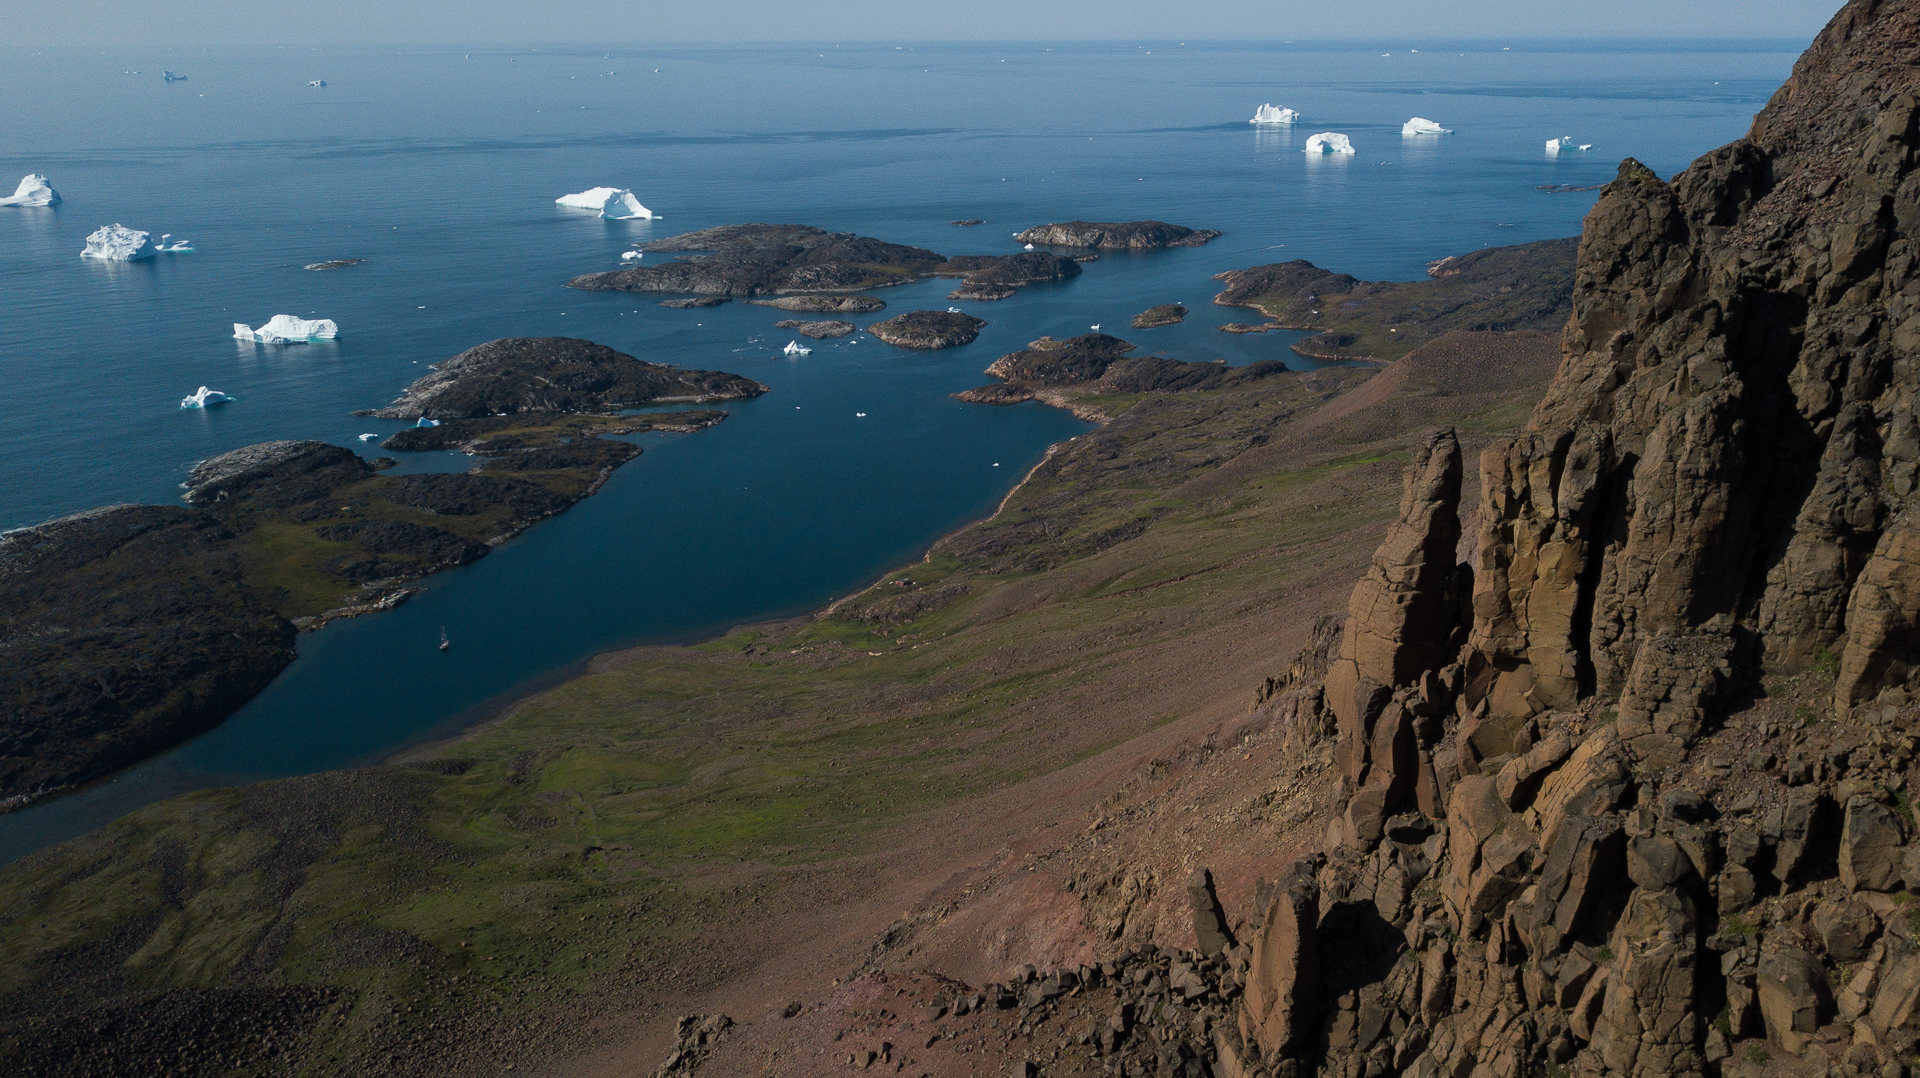 Photographie: Richard Mardens - Expédition Glacialis 2021